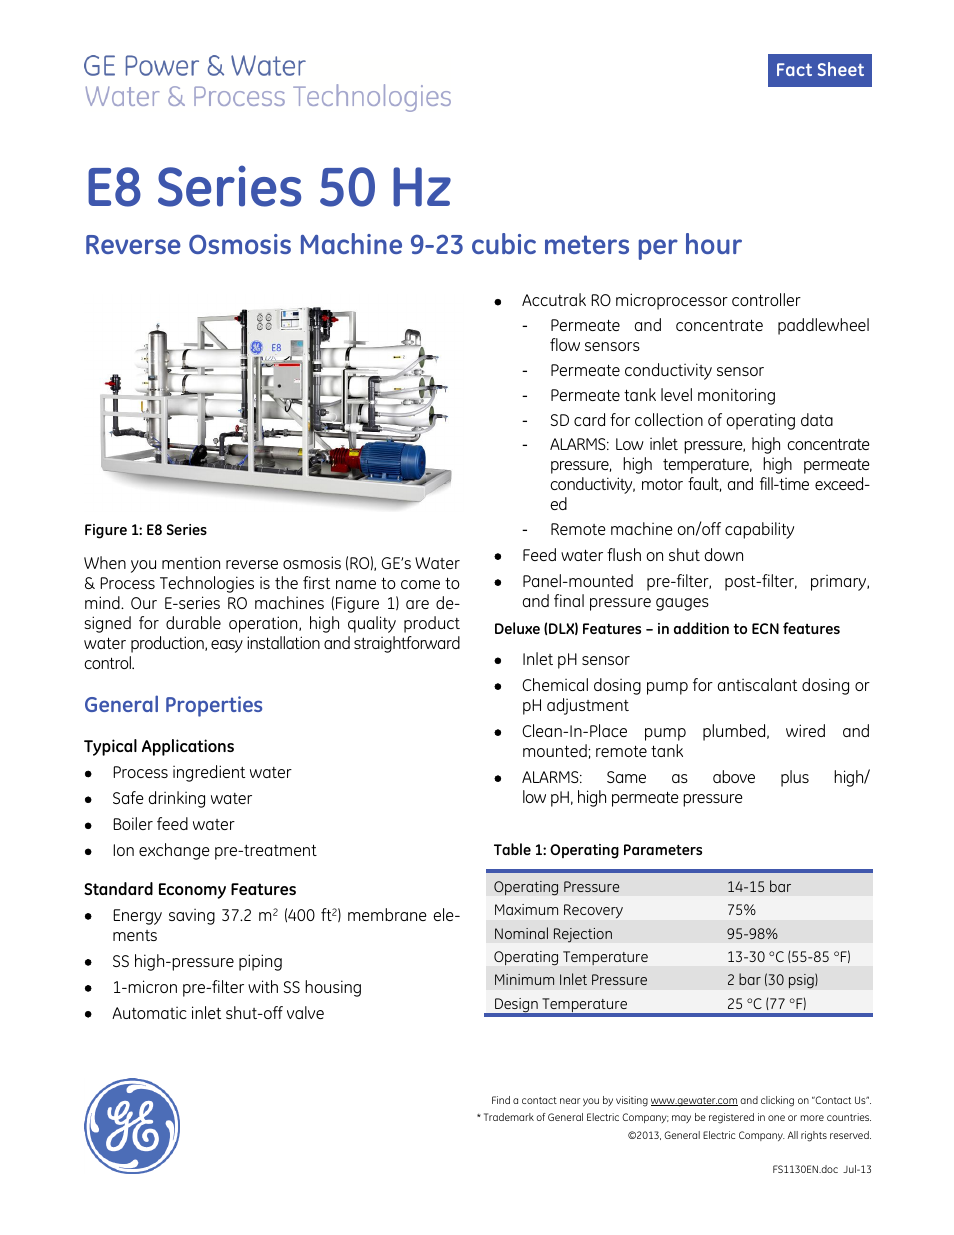 E-Series Reverse Osmosis - E8 50 Hz